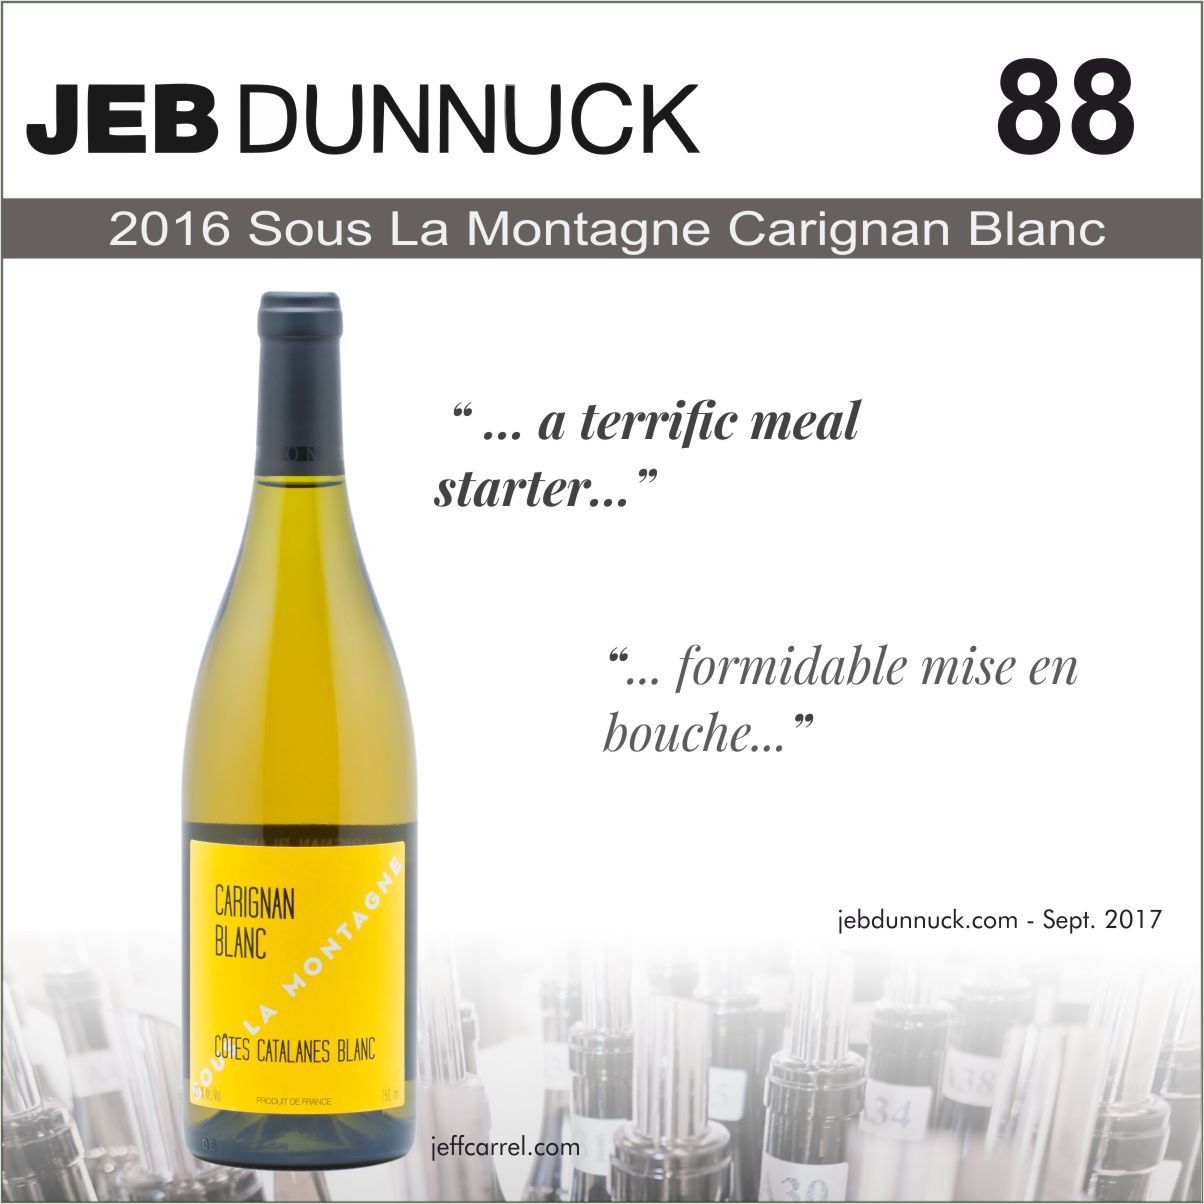 2016-Carignan glanc sous la montagne 88 jeb dunnuck